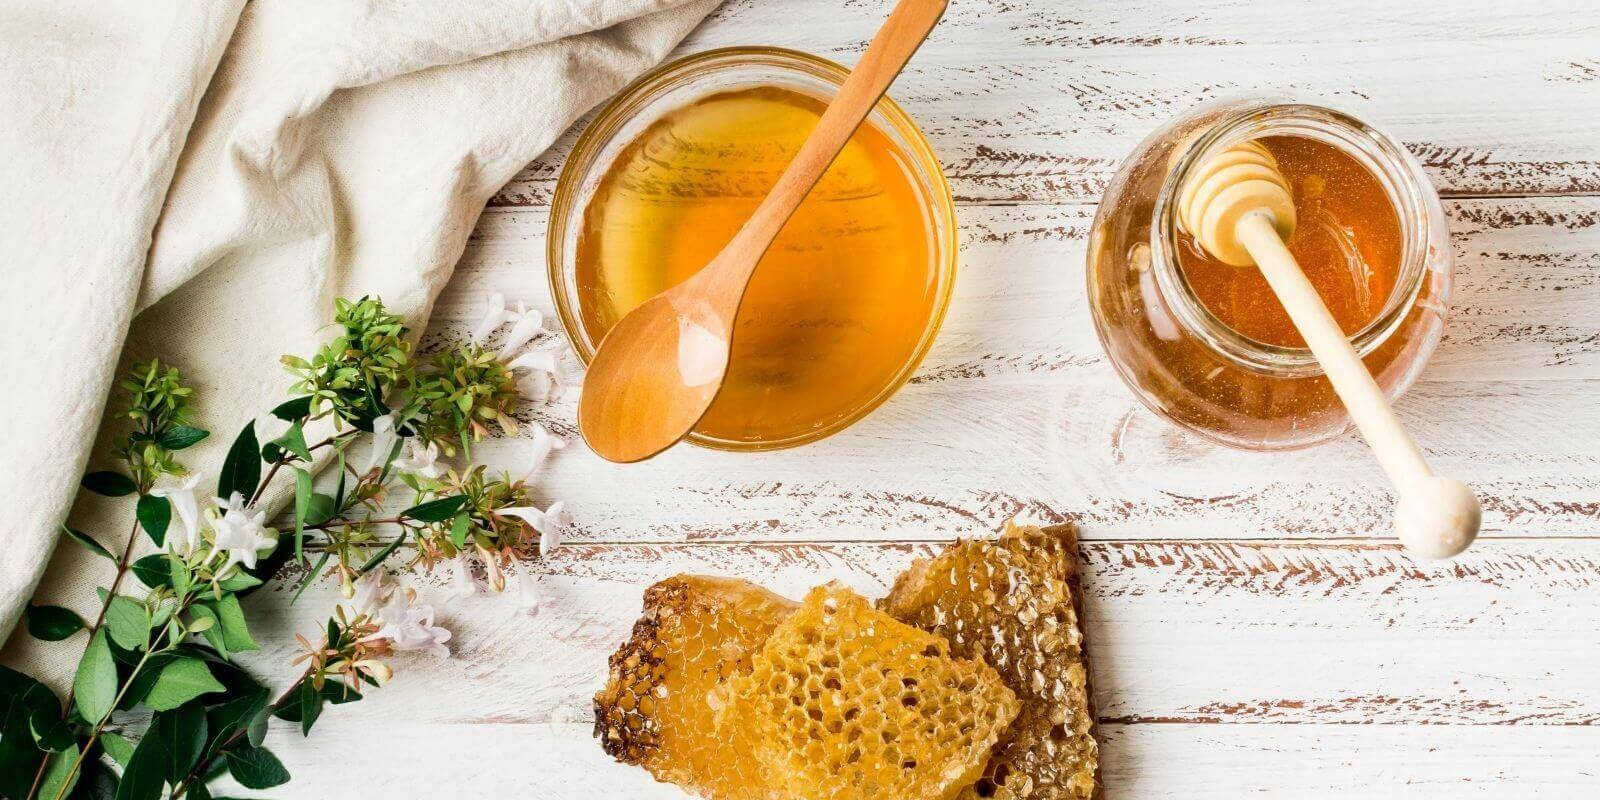 سرفه با عسل طبیعی به راحتی قابل درمان است